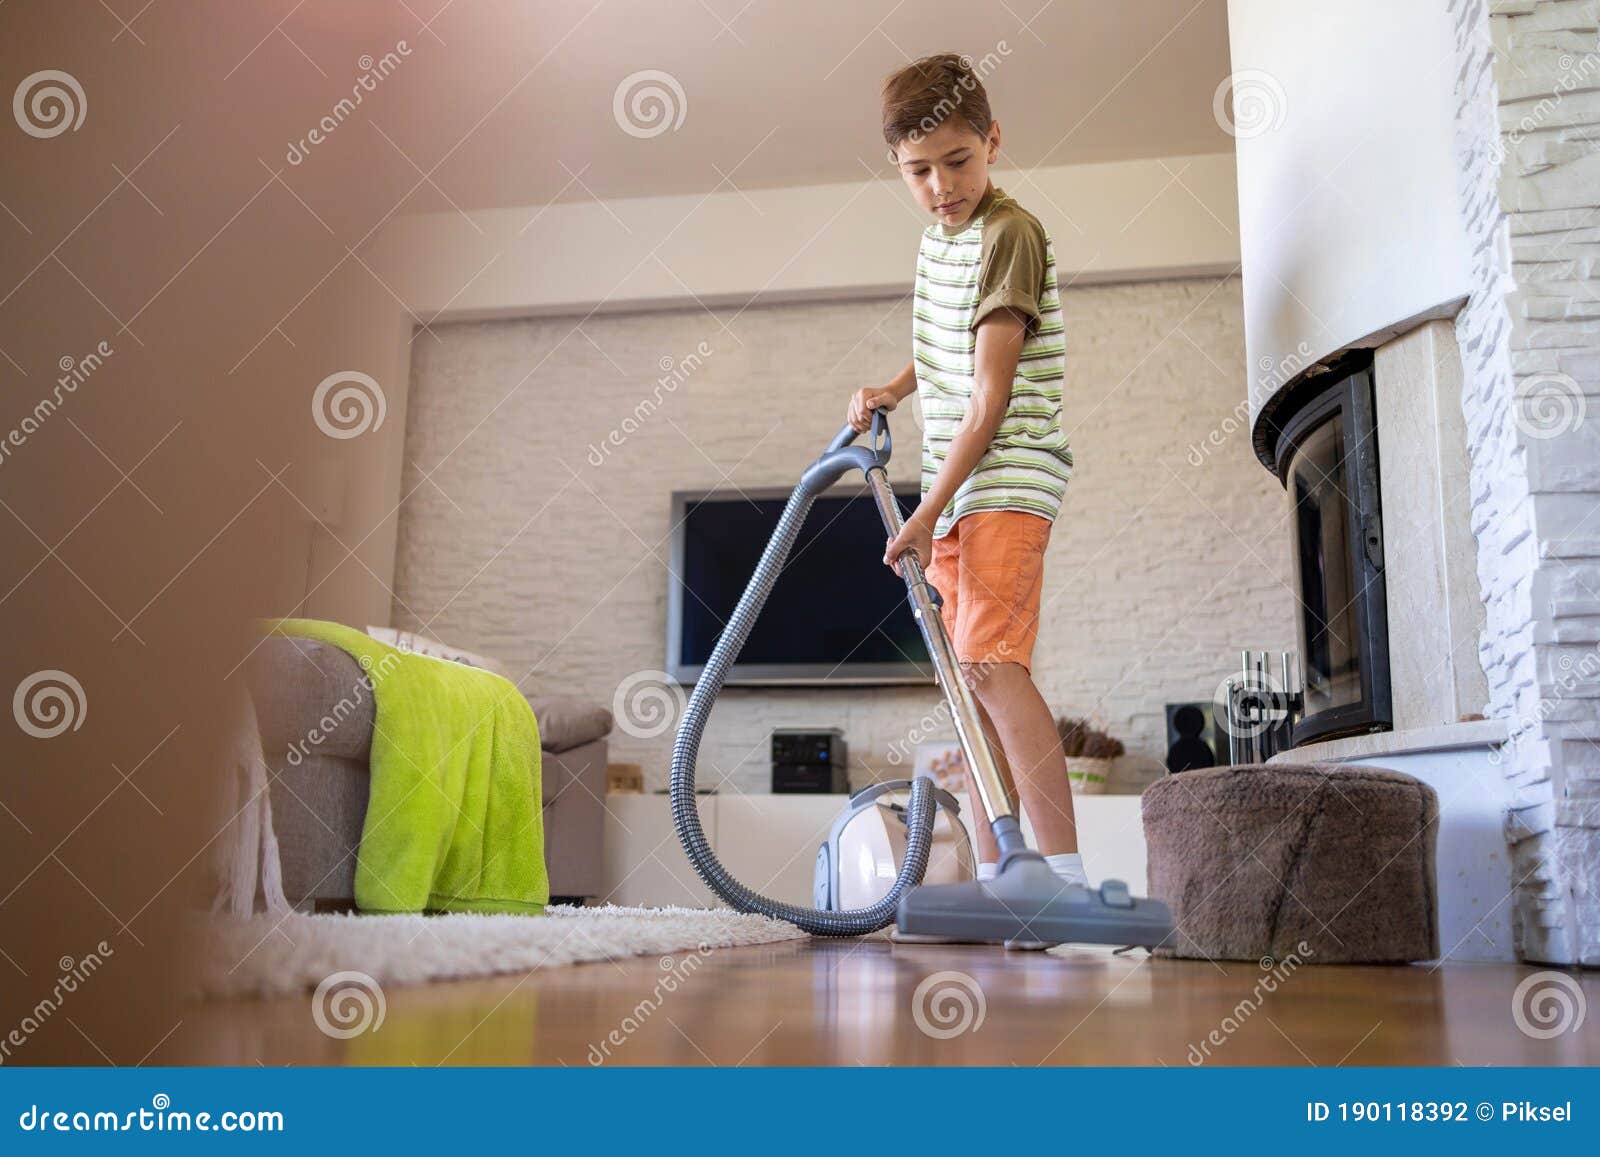 boy vacuuming floor